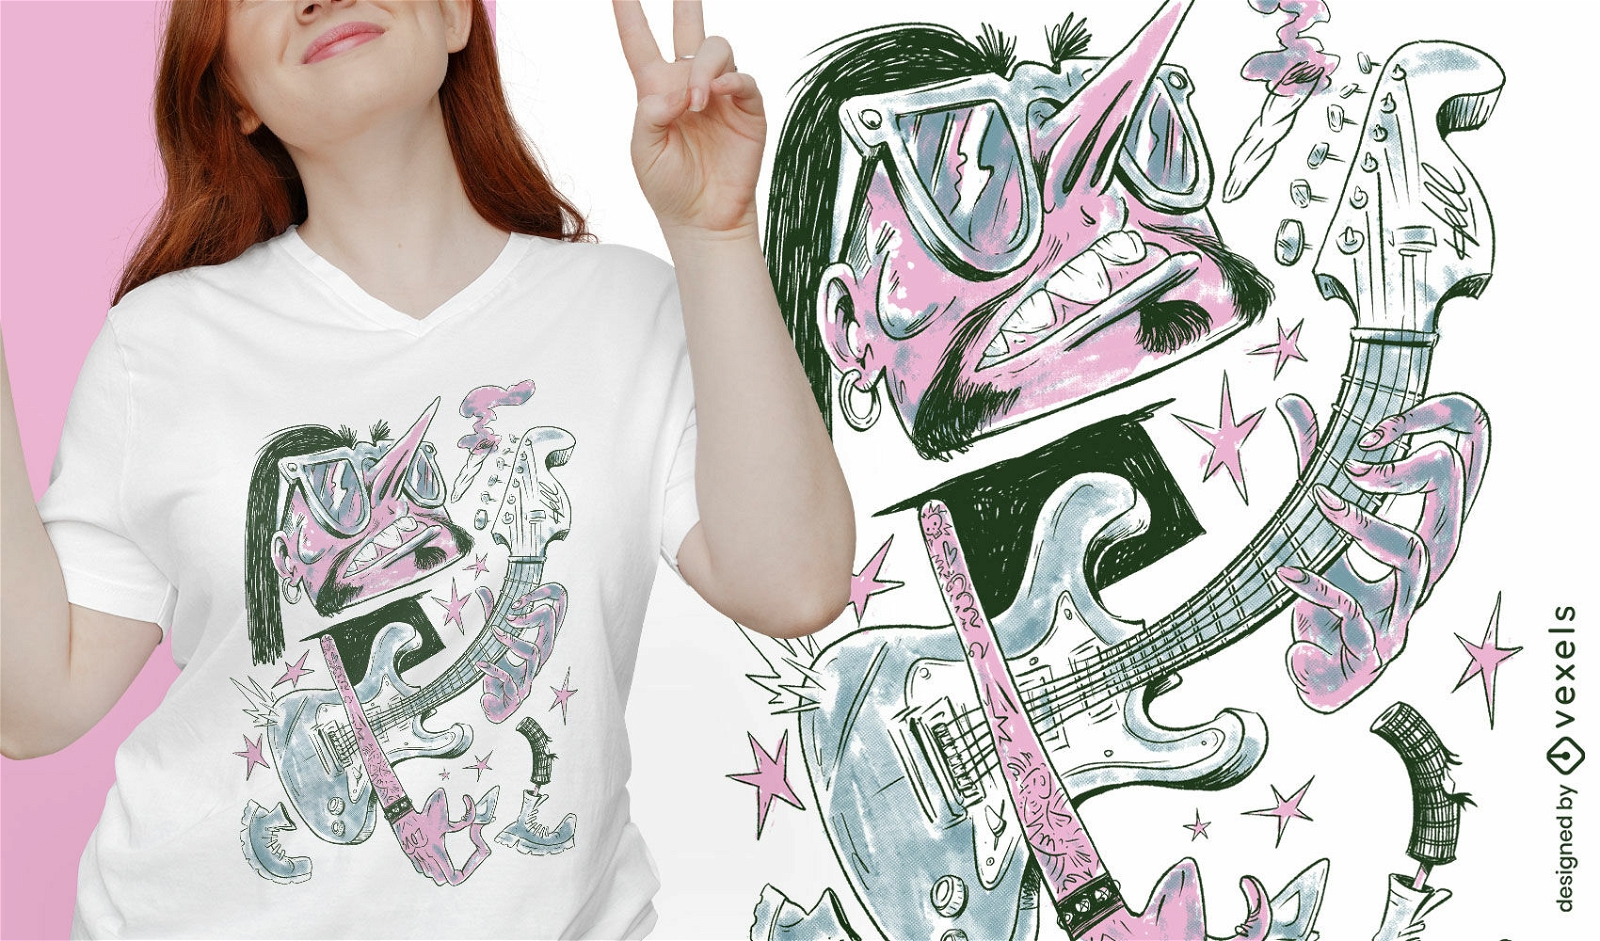 Guitar player cartoon musician t-shirt design